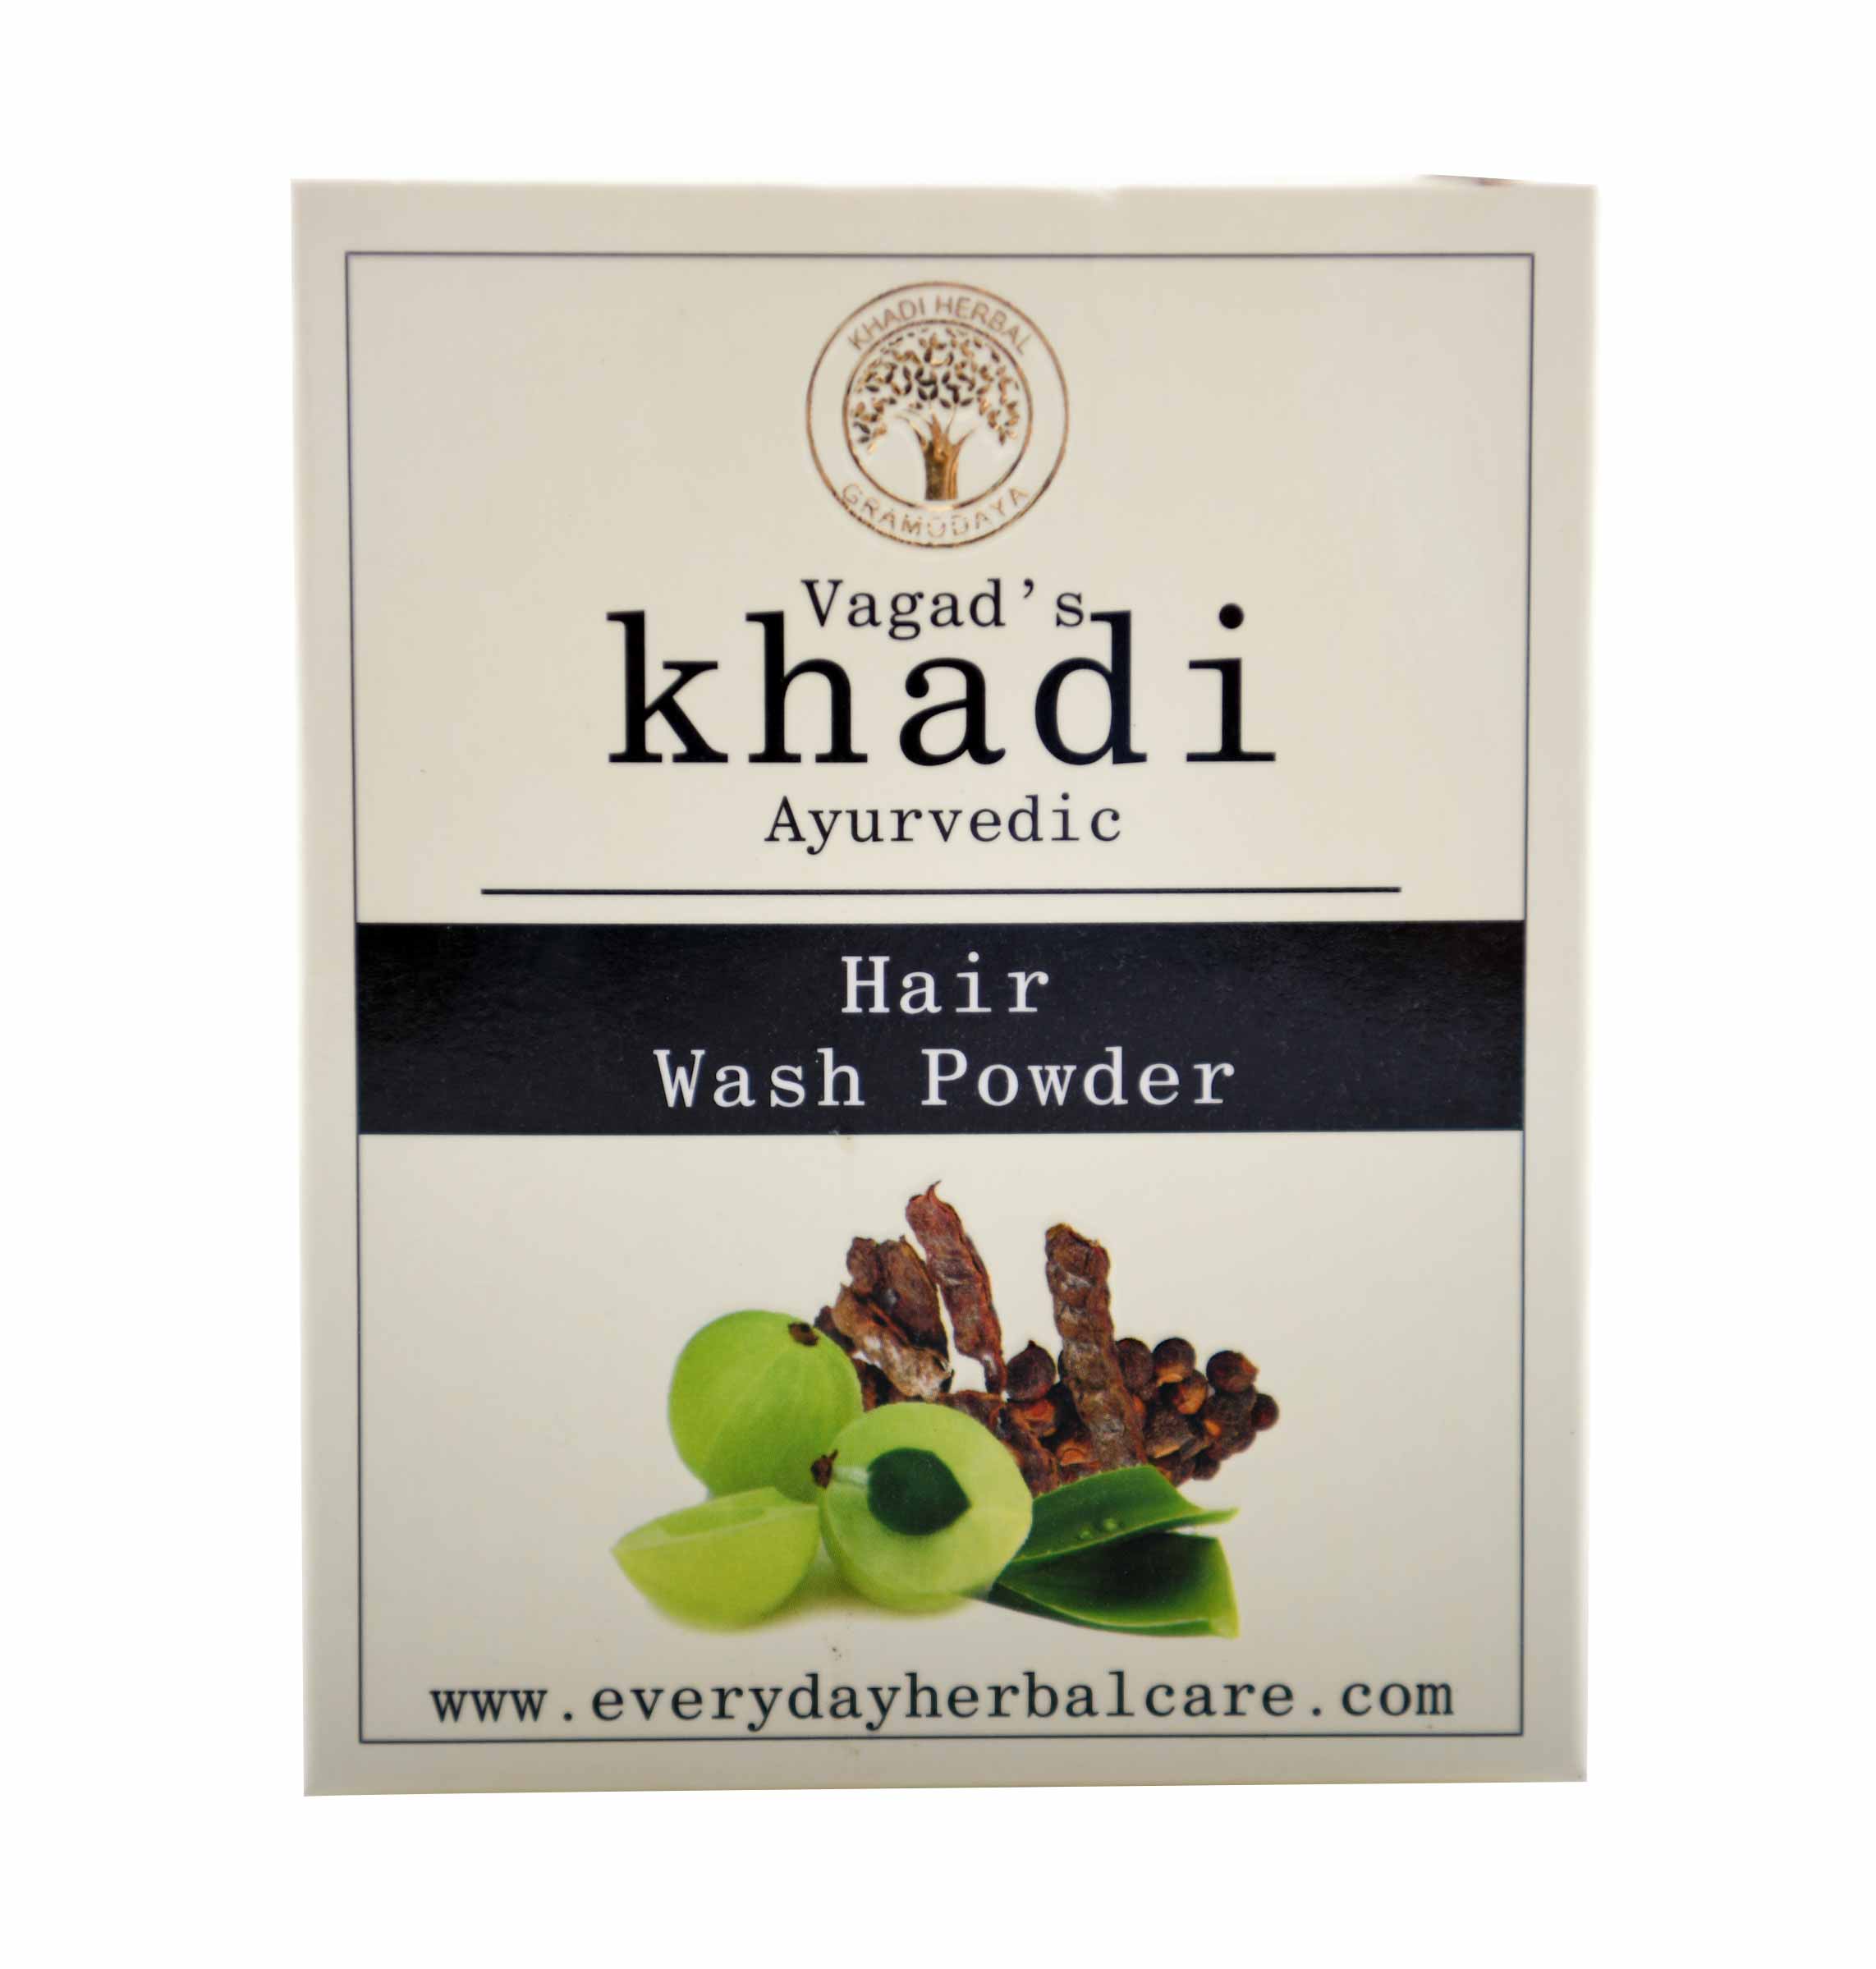 Vagad's Khadi Hair Wash Powder